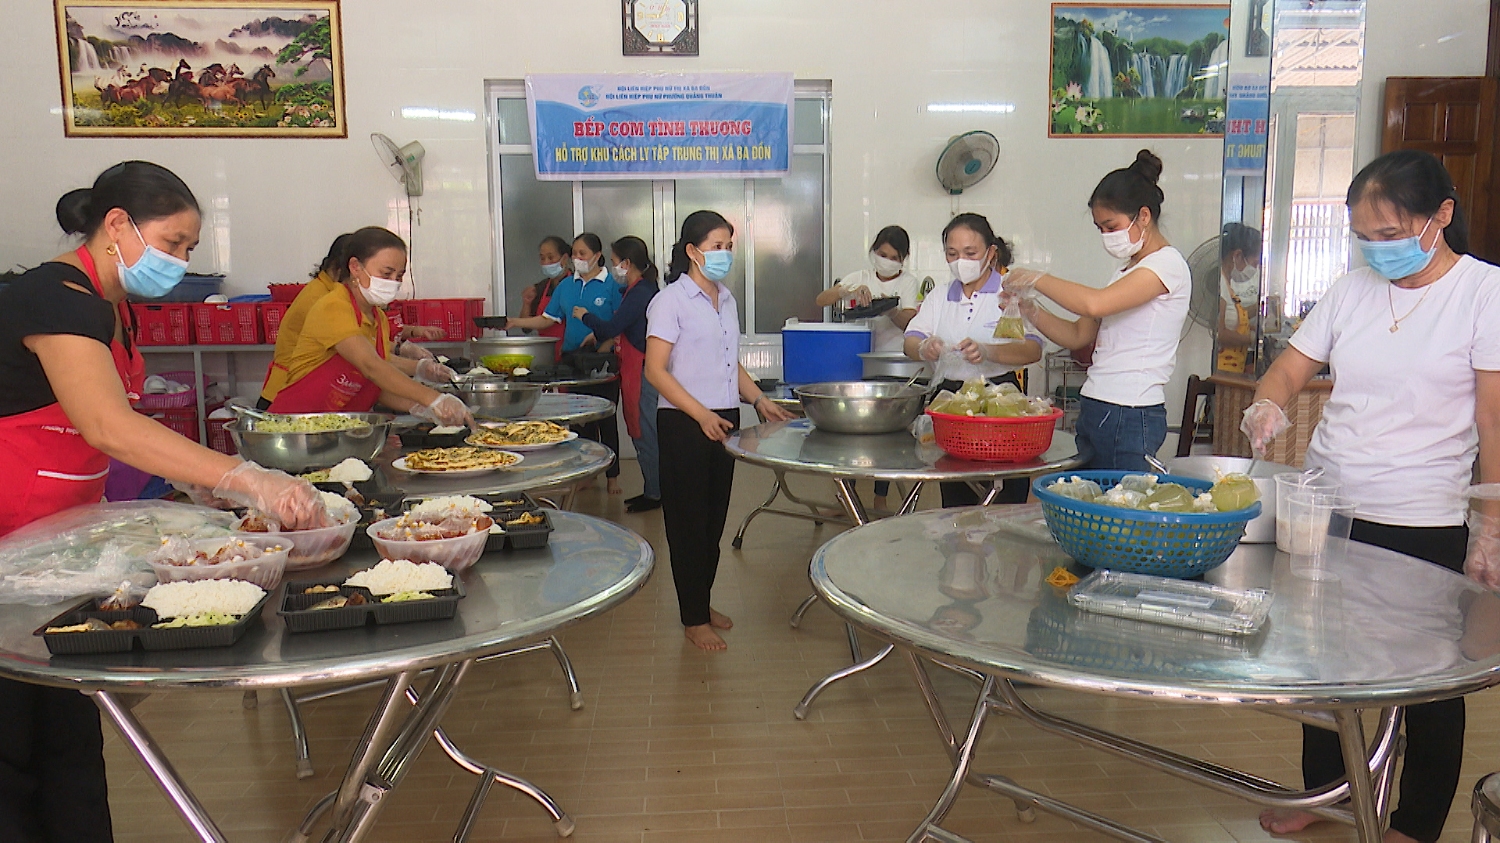 Hội liên hiệp phụ nữ phường Quảng Thuận hưởng ứng Bếp cơm tình thương hỗ trợ khu cách ly tập trung thị xã Ba Đồn